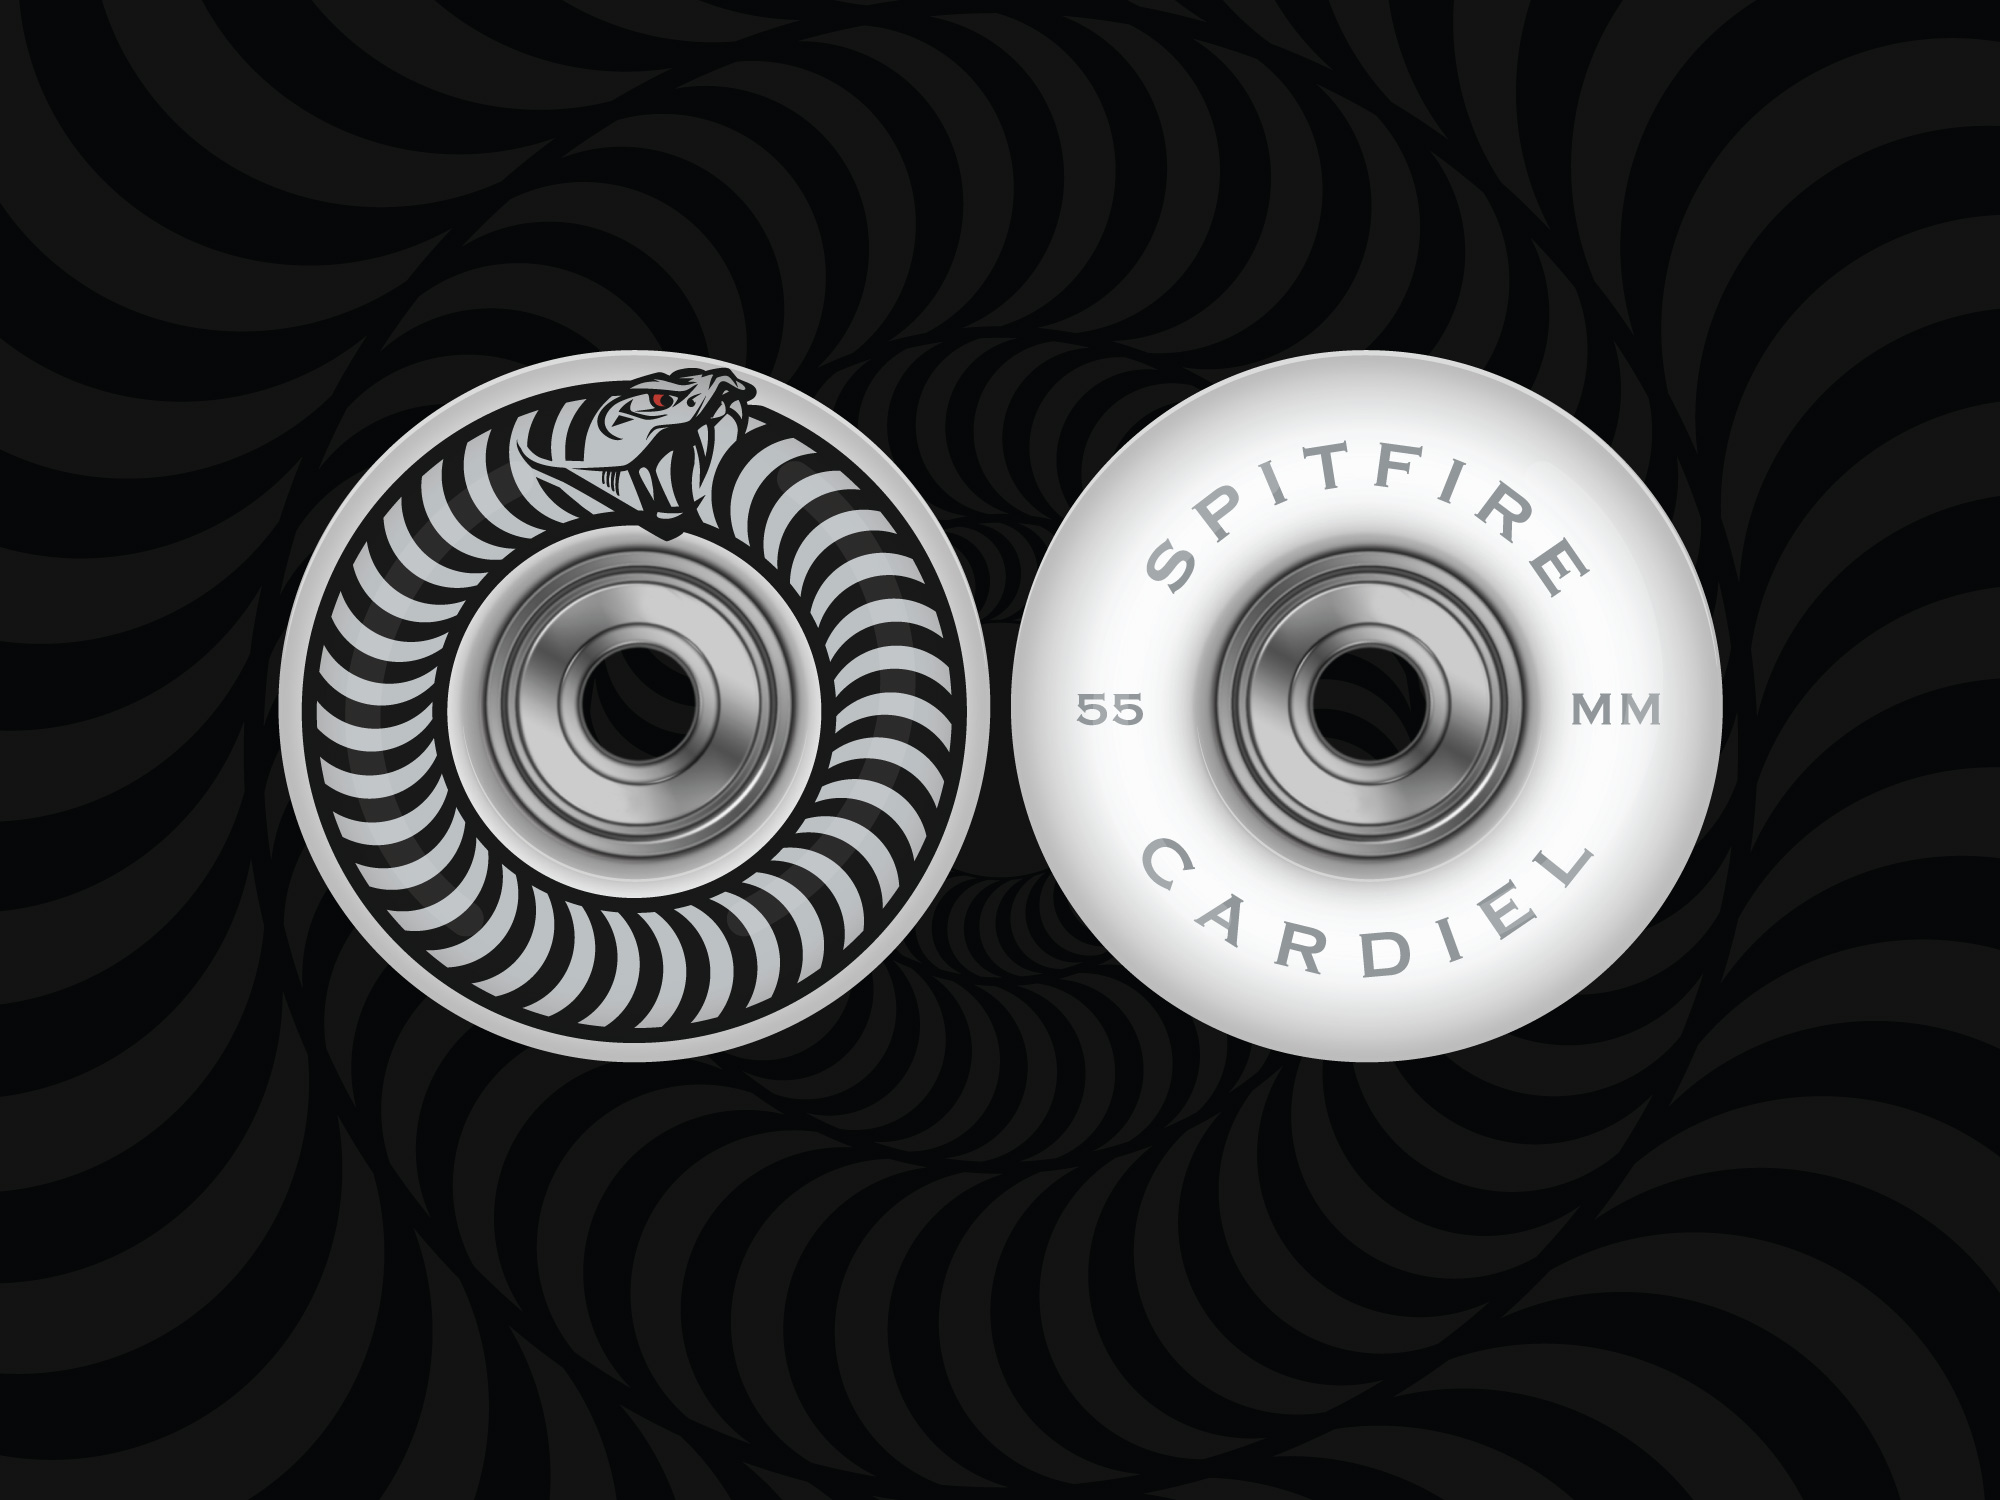 Spitfire Wheels Cardiel Design by Old Dirty Dermot Design & Illustration